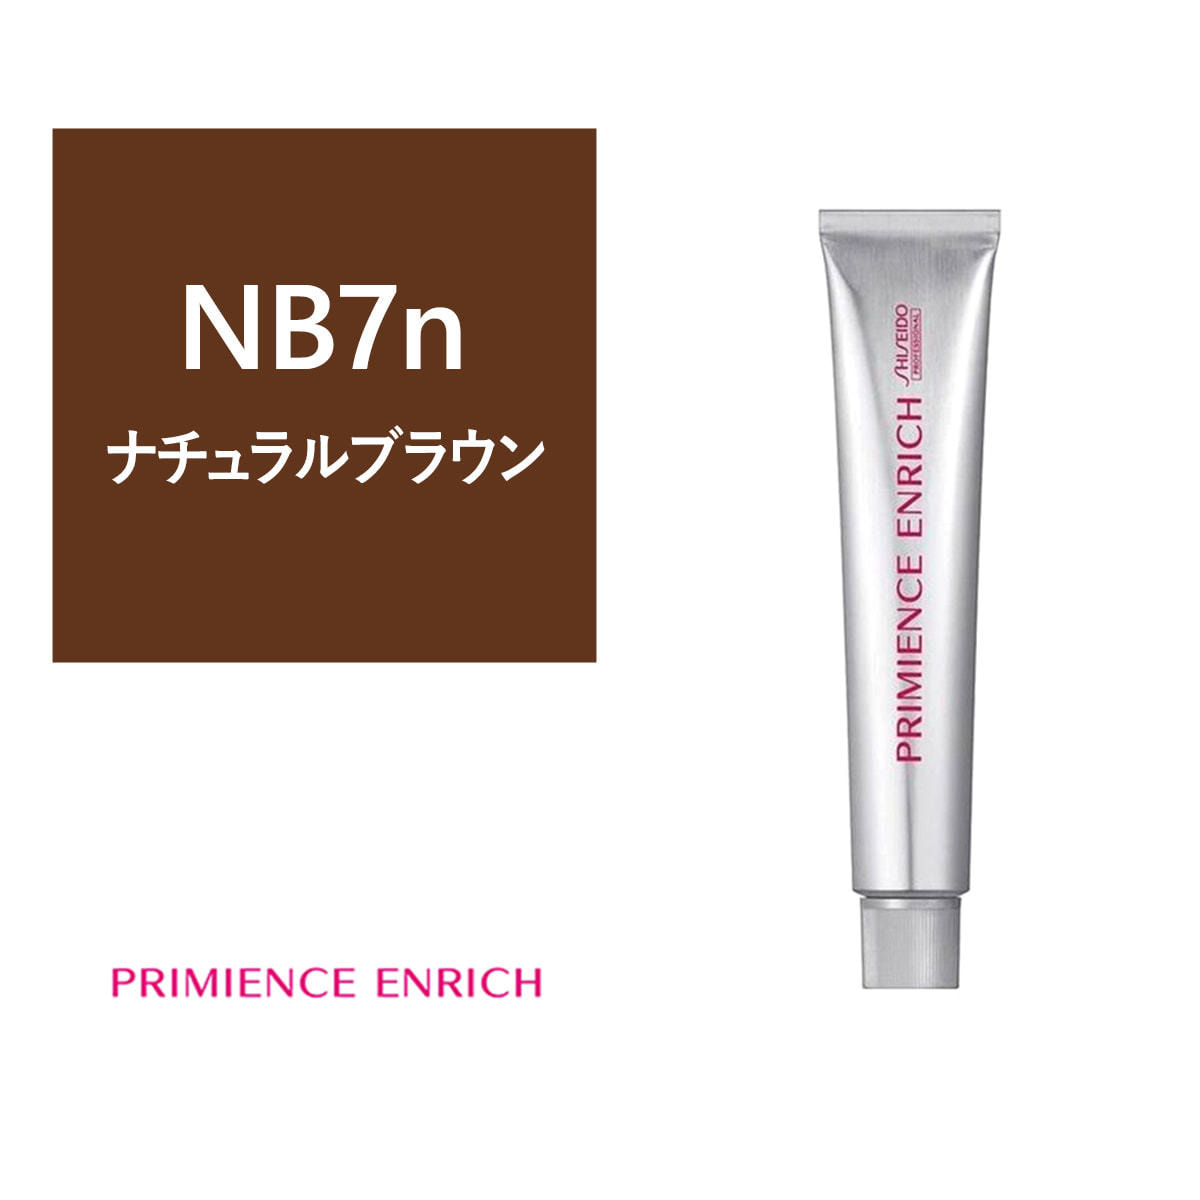 ◇限定Special Price 資生堂 プリミエンス エンリッチ NB7 80g discoversvg.com